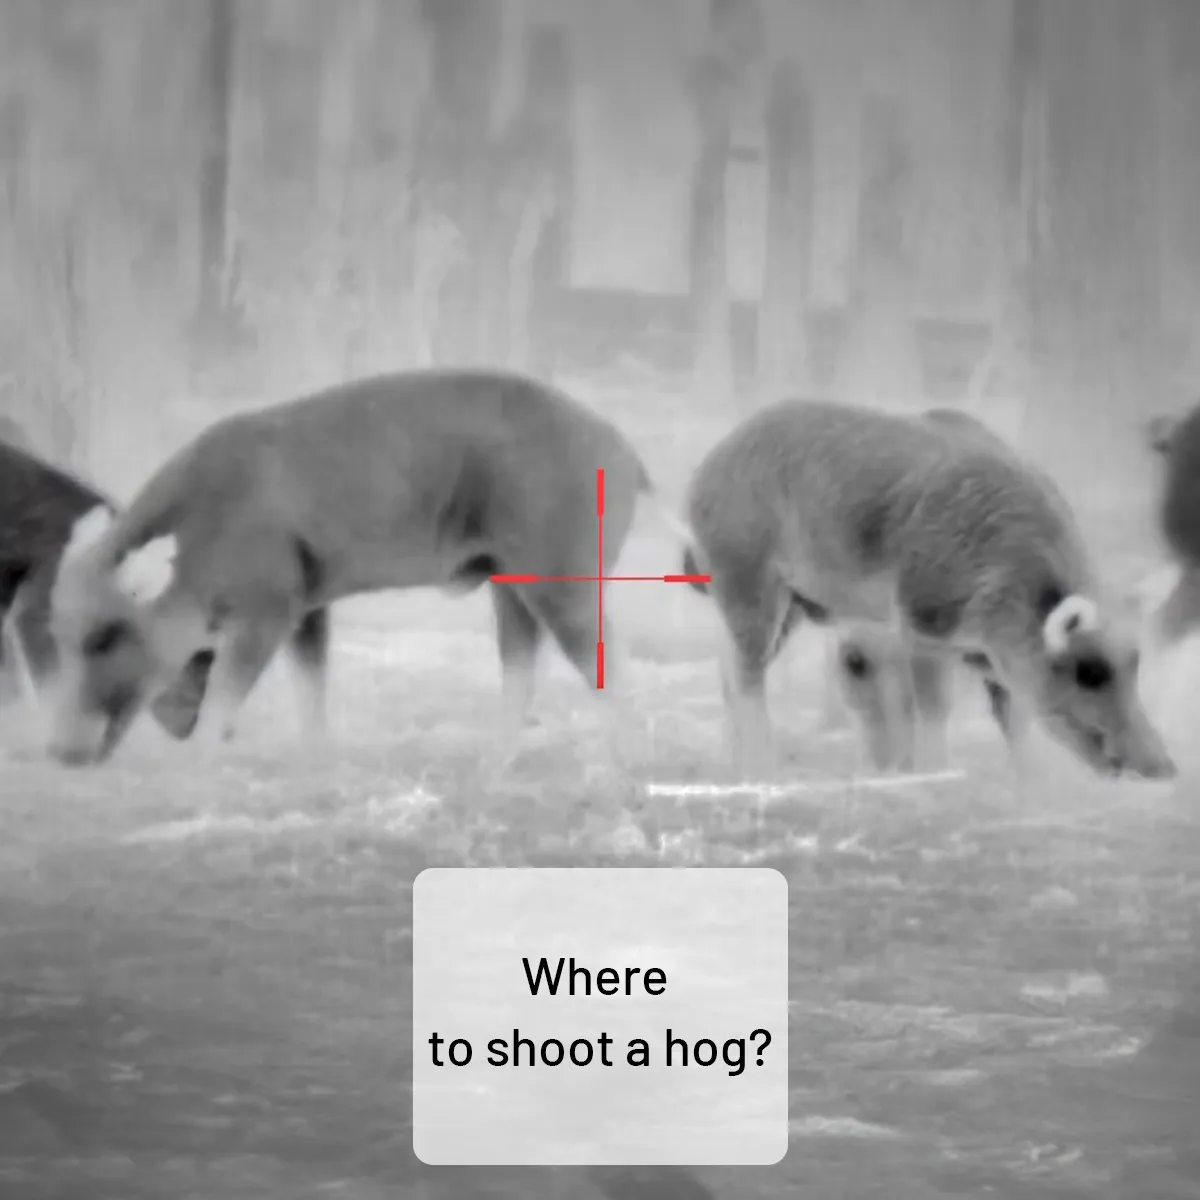 Where to shoot a hog?